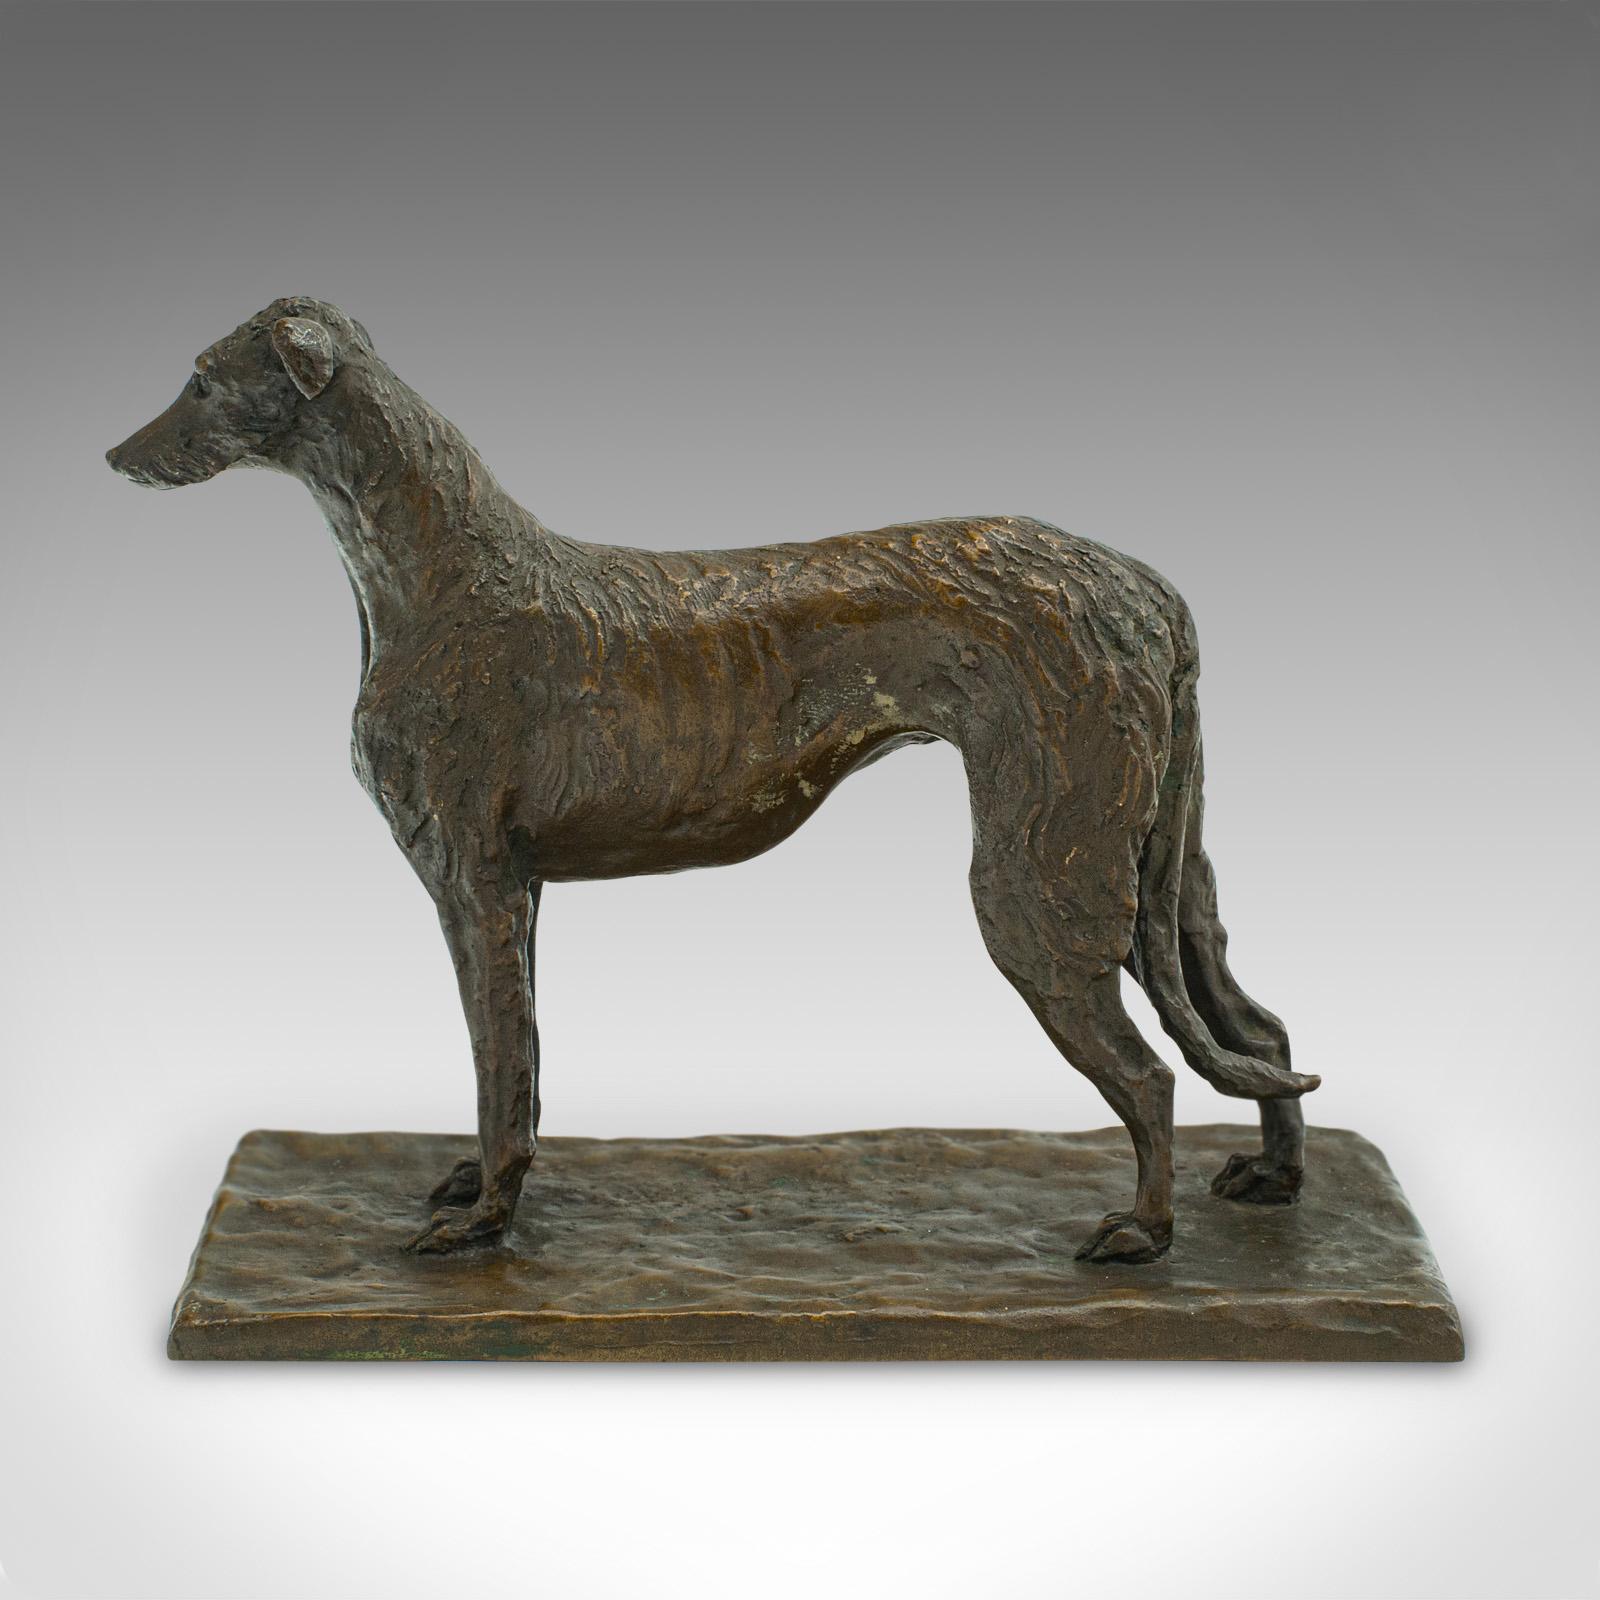 Il s'agit d'une ancienne figurine de chien décorative. Chien de chasse viennois autrichien en bronze, datant de la fin de la période victorienne, vers 1900.

Tactile et attachant, un régal pour la vitrine ou le manteau de cheminée.
Patine